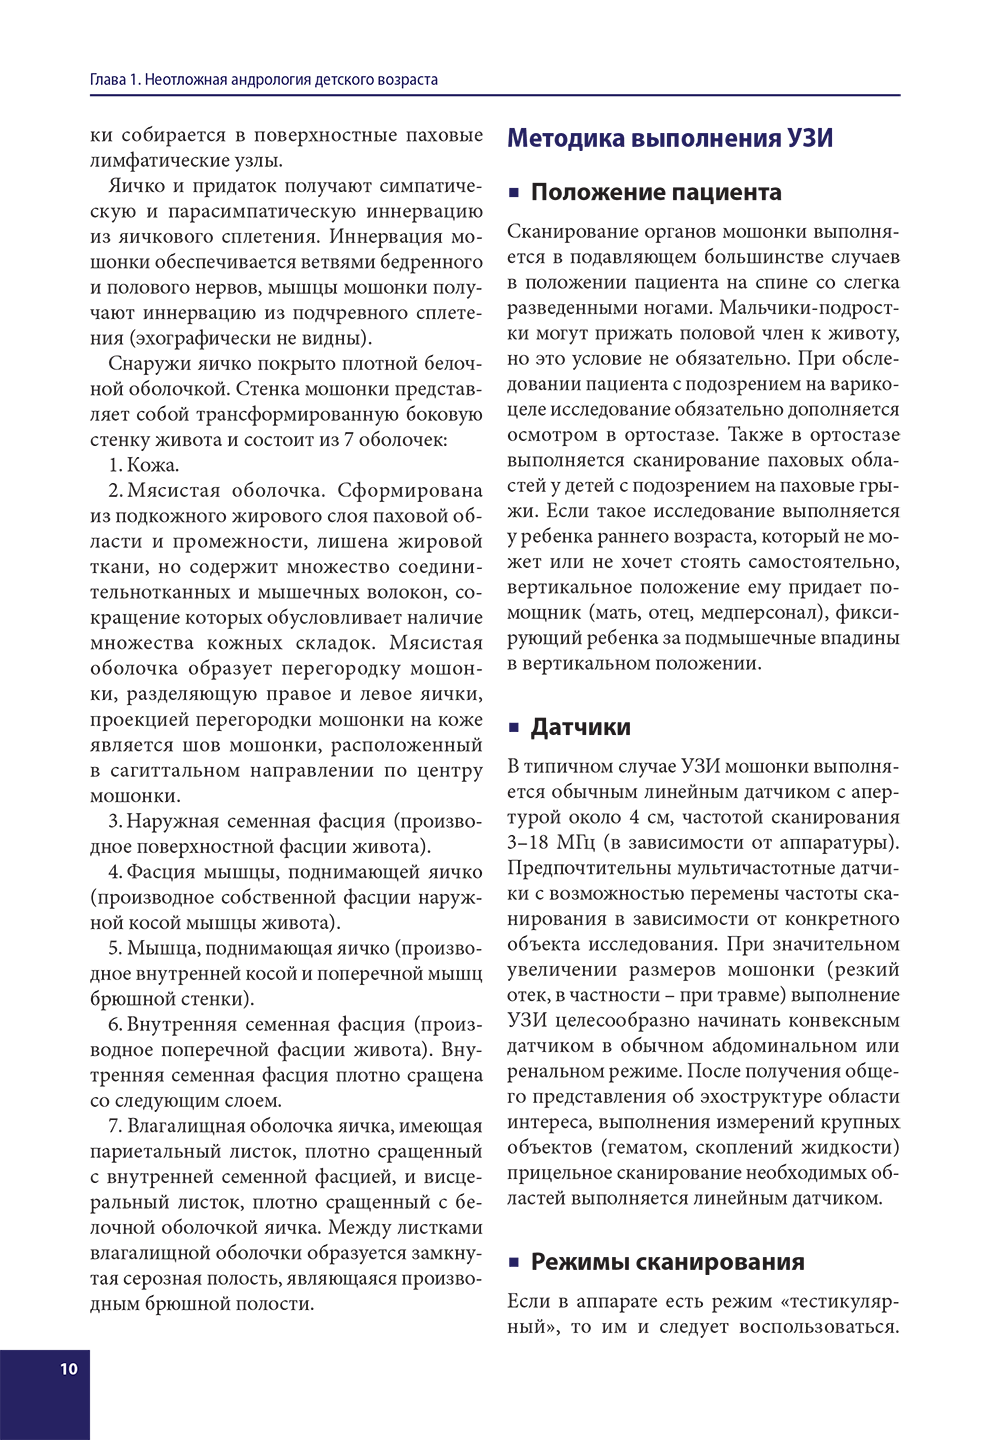 Пример страницы из книги "Ультразвуковая диагностика в детской андрологии и гинекологии. Неотложные состояния" - Ольхова Е. Б.